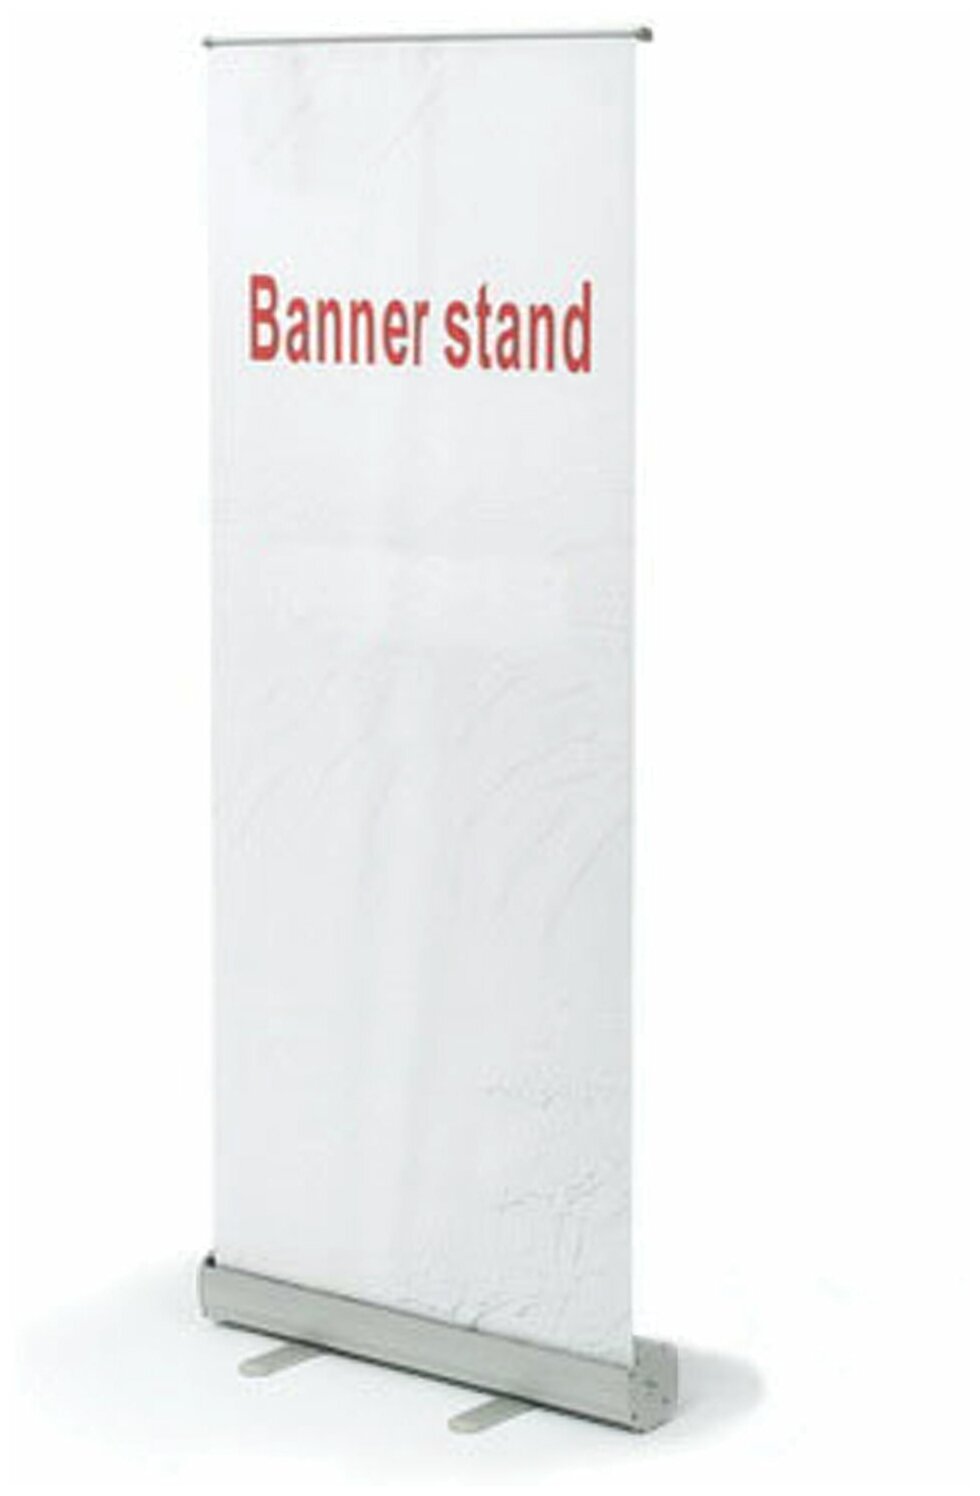 Стенд мобильный для баннера "Роллскрин 2(80)", размер рекламного поля 800х2000 мм, алюминий, 290521 - 1 шт.